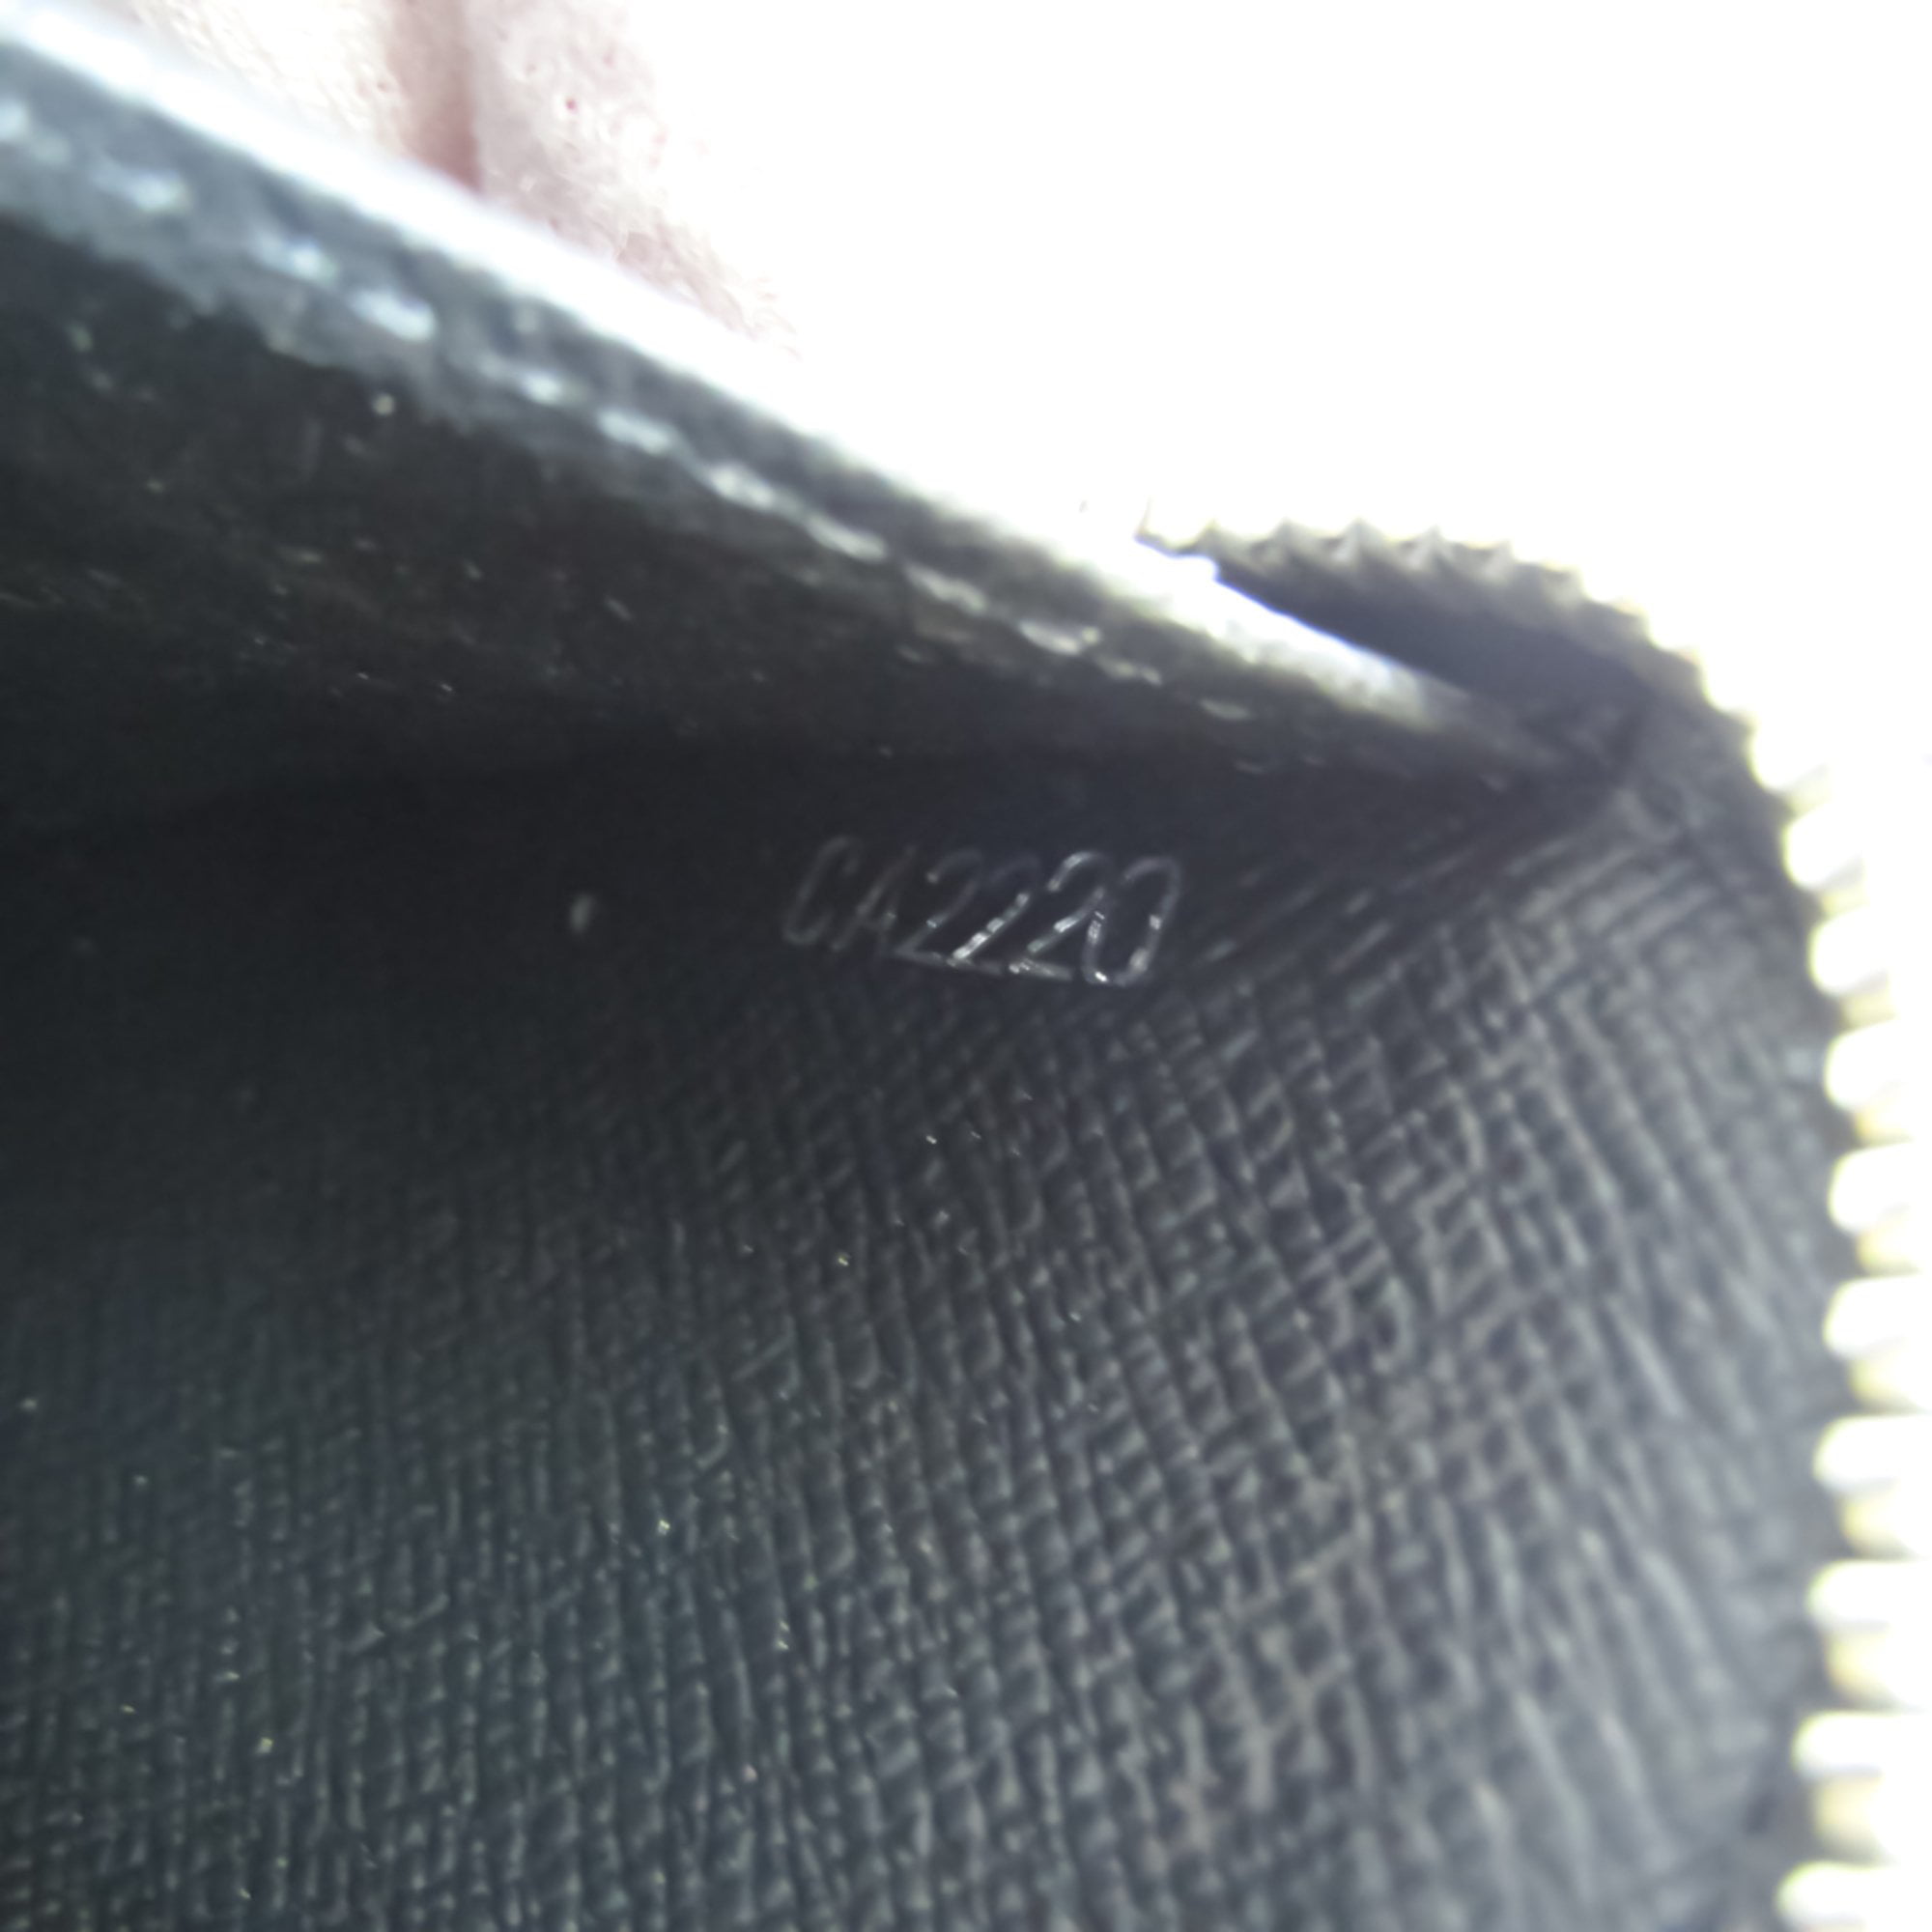 Louis Vuitton Taiga Leather Pocket Organizer Zippy Wallet Black